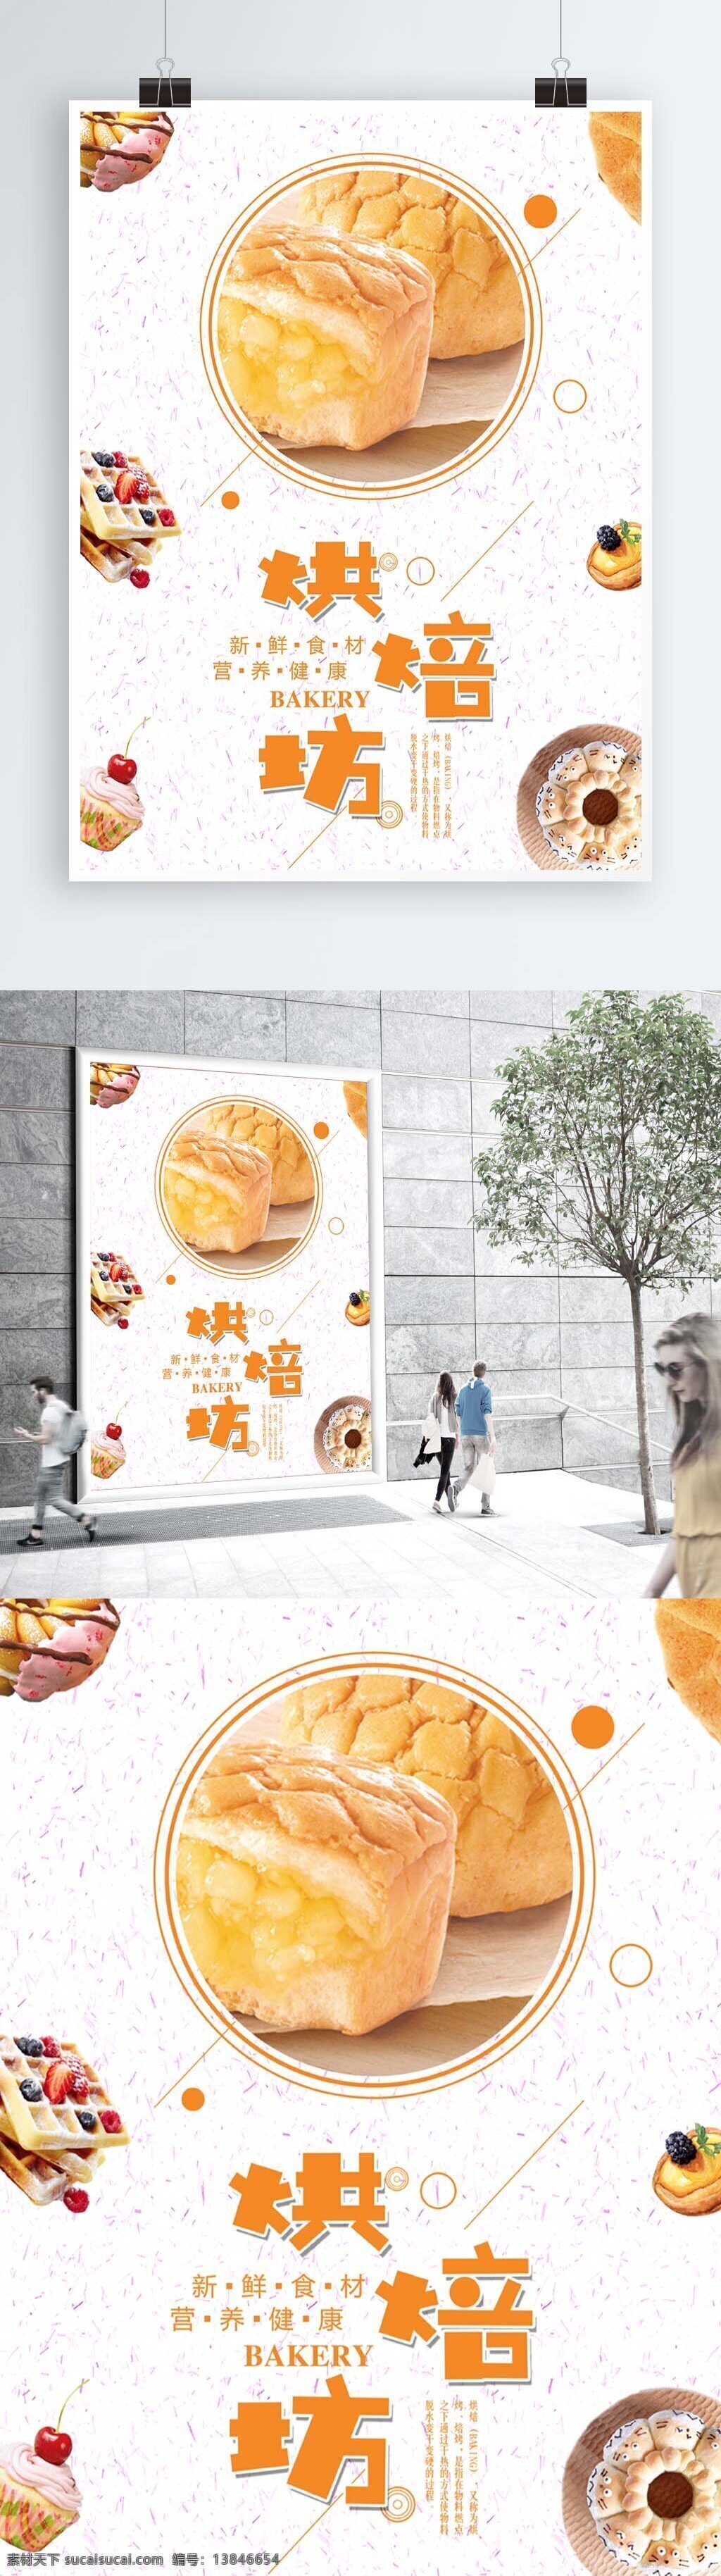 简约 小 清新 烘 培 坊 蛋糕 烘培坊海报 面包 面包店海报 甜品 甜品海报 小清新